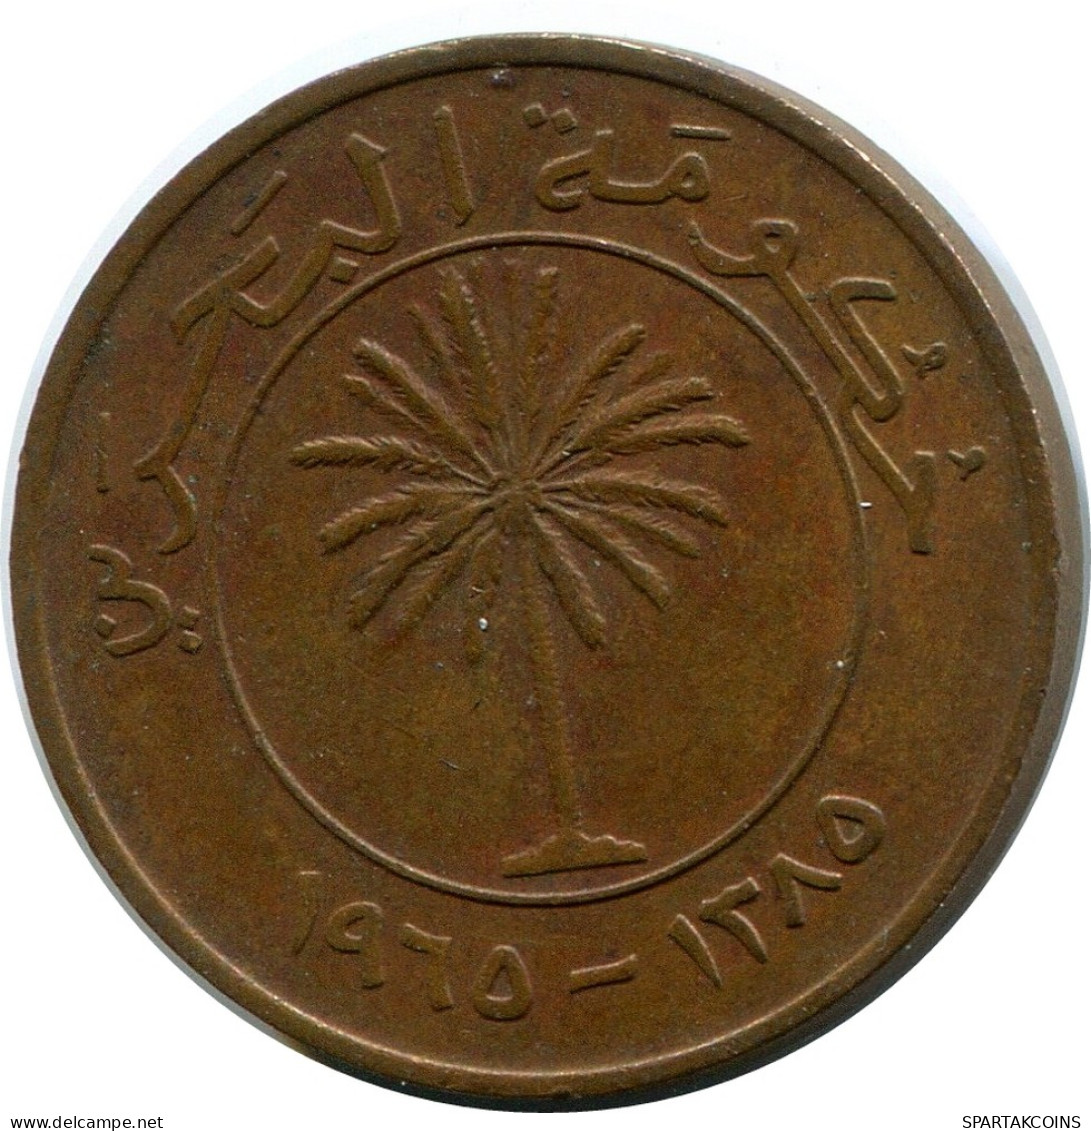 5 FILS 1965 BAHRAIN Islamic Coin #AK179.U - Bahrain